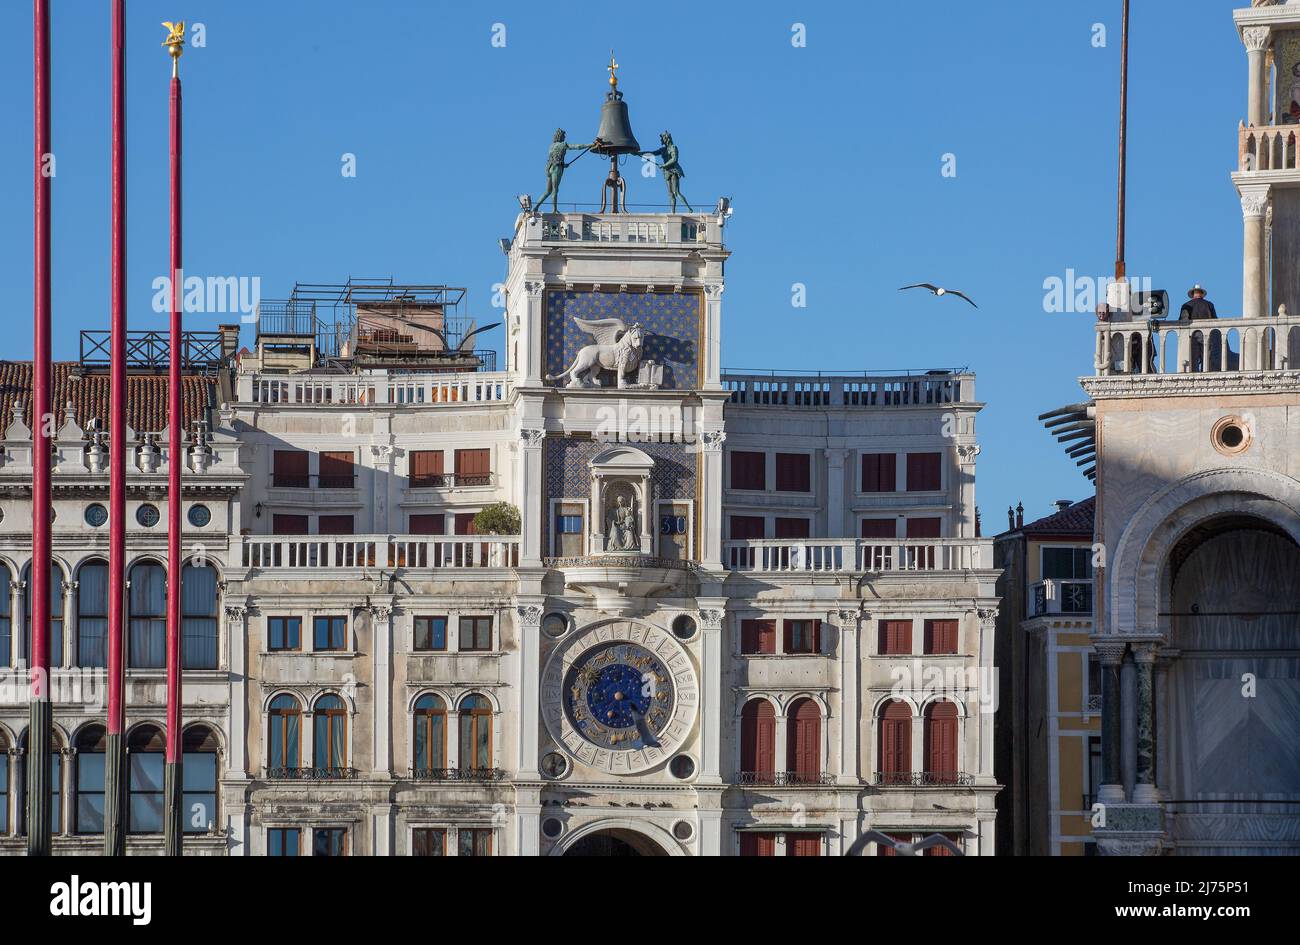 Italien Venedig Uhrenturm -497  vollendet 1499 von Mauro Codussi Südfassade Obergeschosse mit Analog- u Digitaluhr Markuslöwe und bronzenen Glockensch Stock Photo